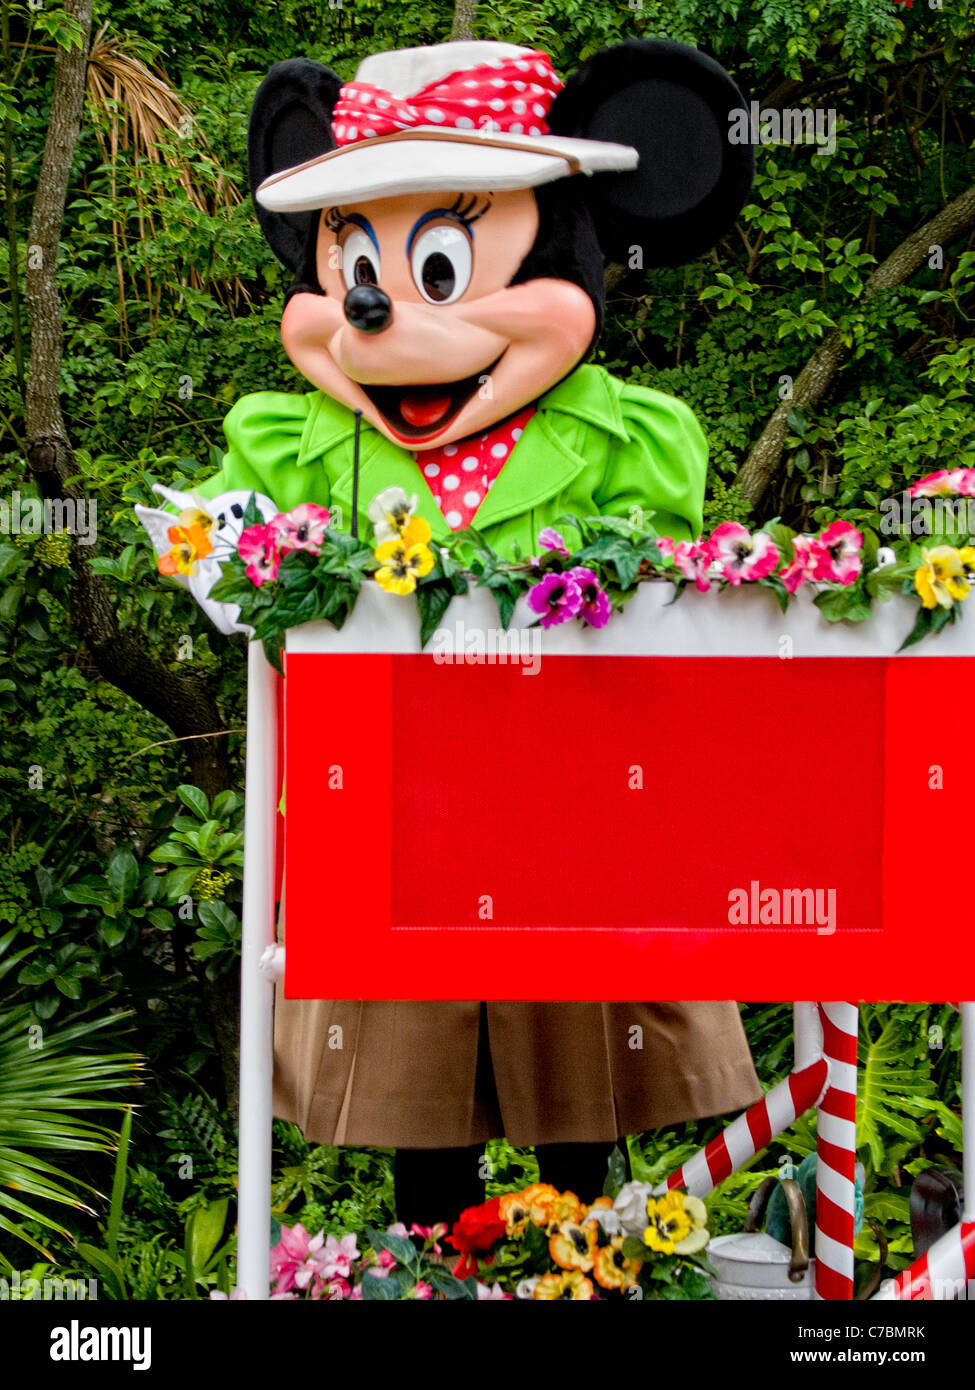 Minnie Mouse in parade at Epcot Center, Orlando, Florida, USA. Stock Photo